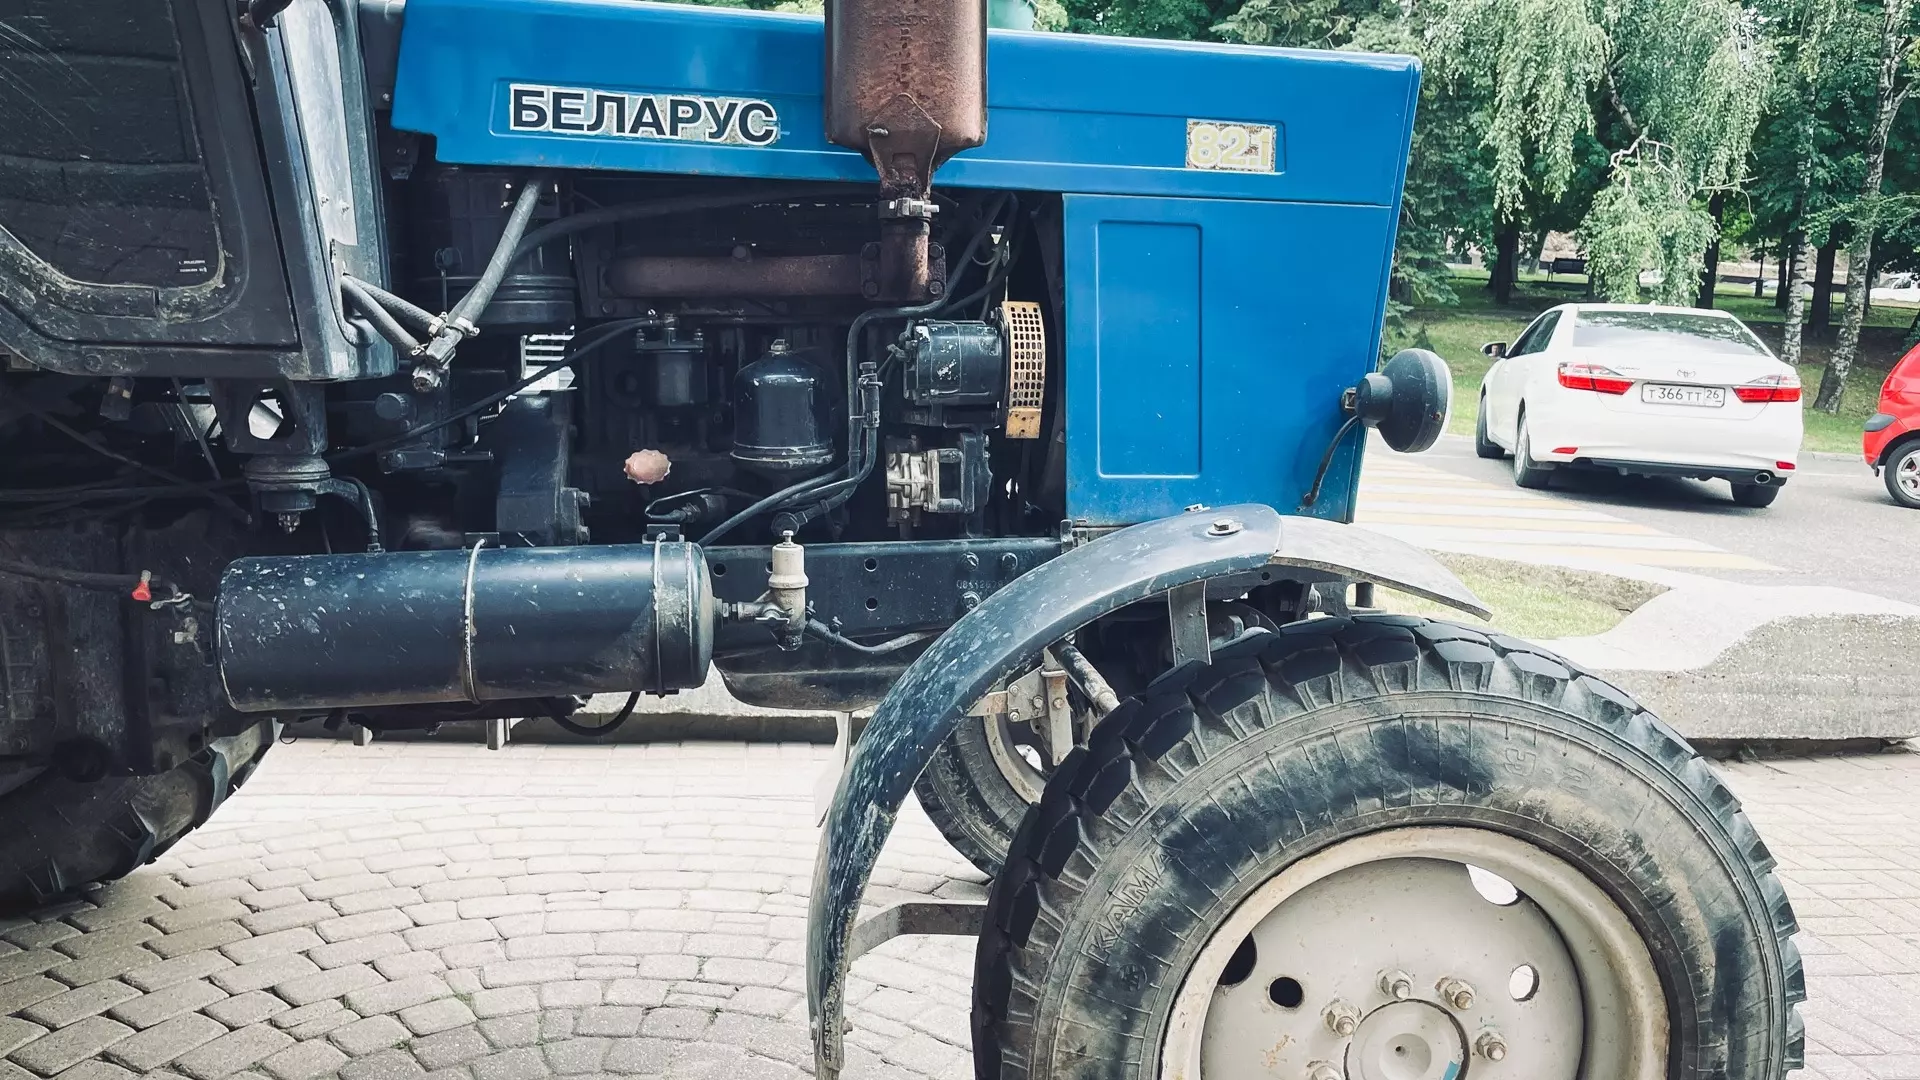 Центр продажи тракторов "Беларус" откроют в Нижегородской области